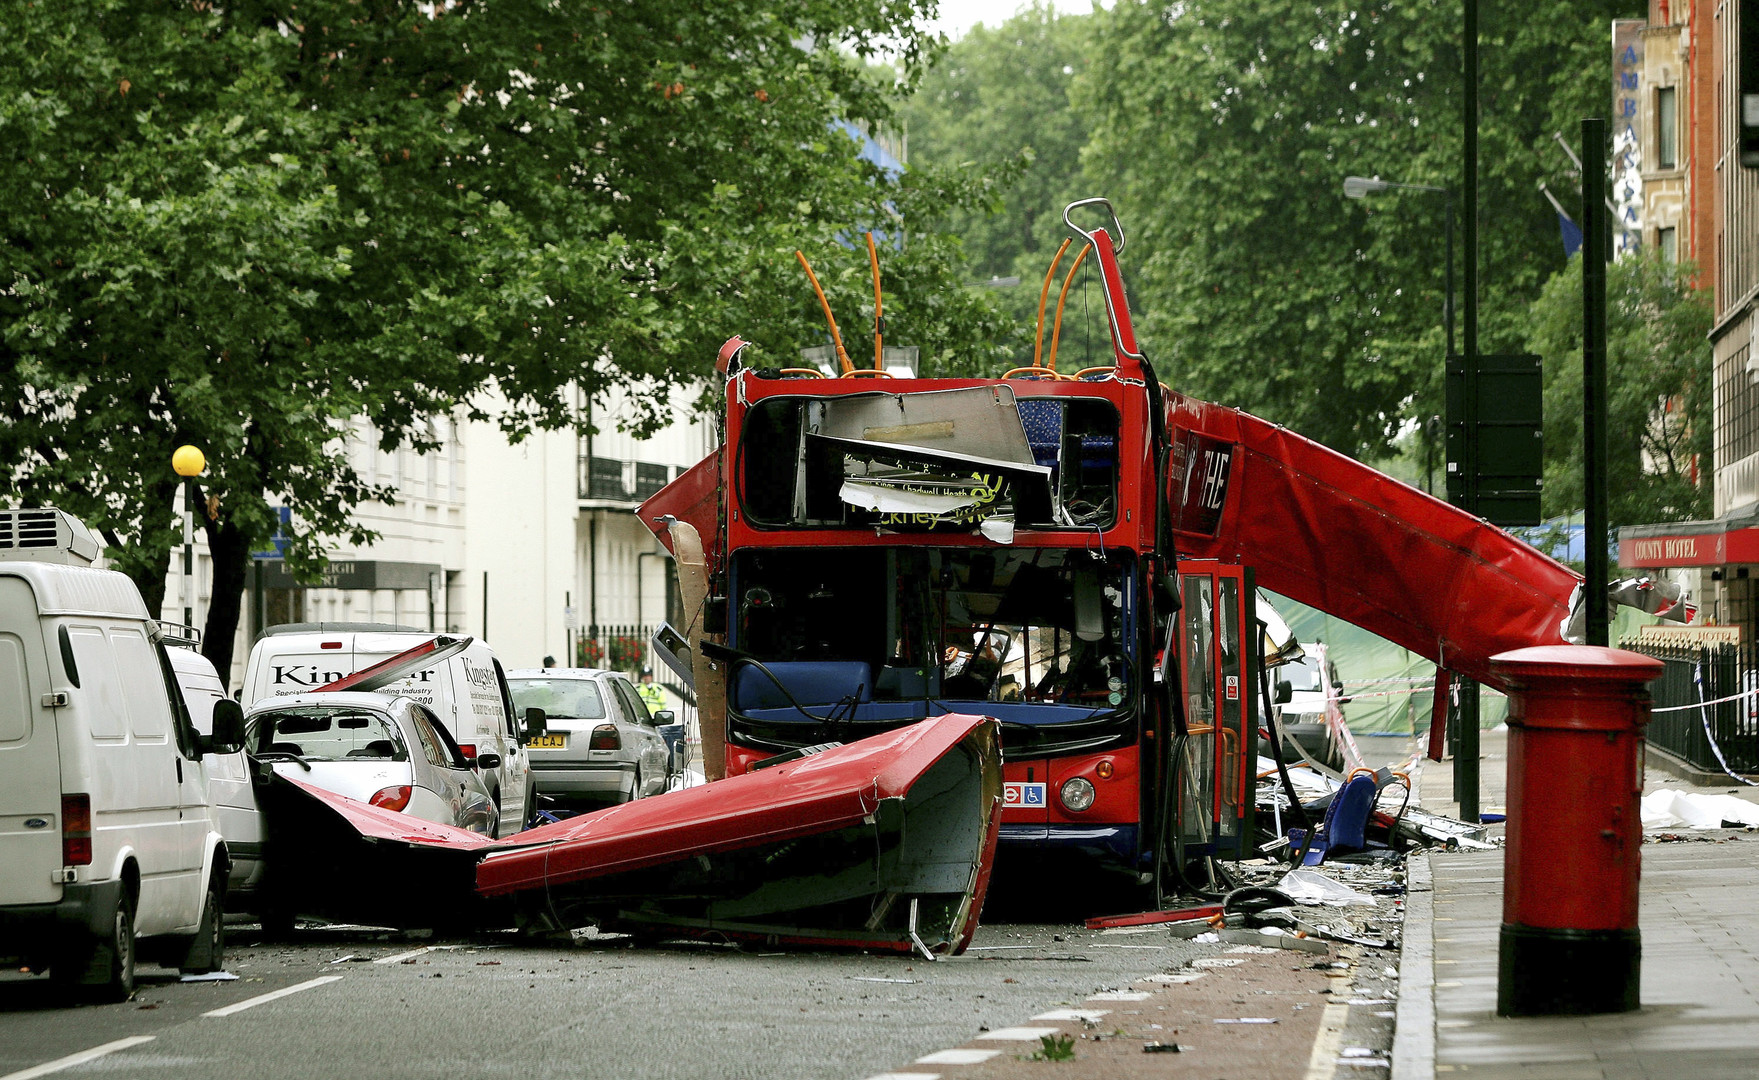 Cinq attaques meurtrières qui ont secoué le Royaume-Uni depuis 2005 (PHOTOS) 